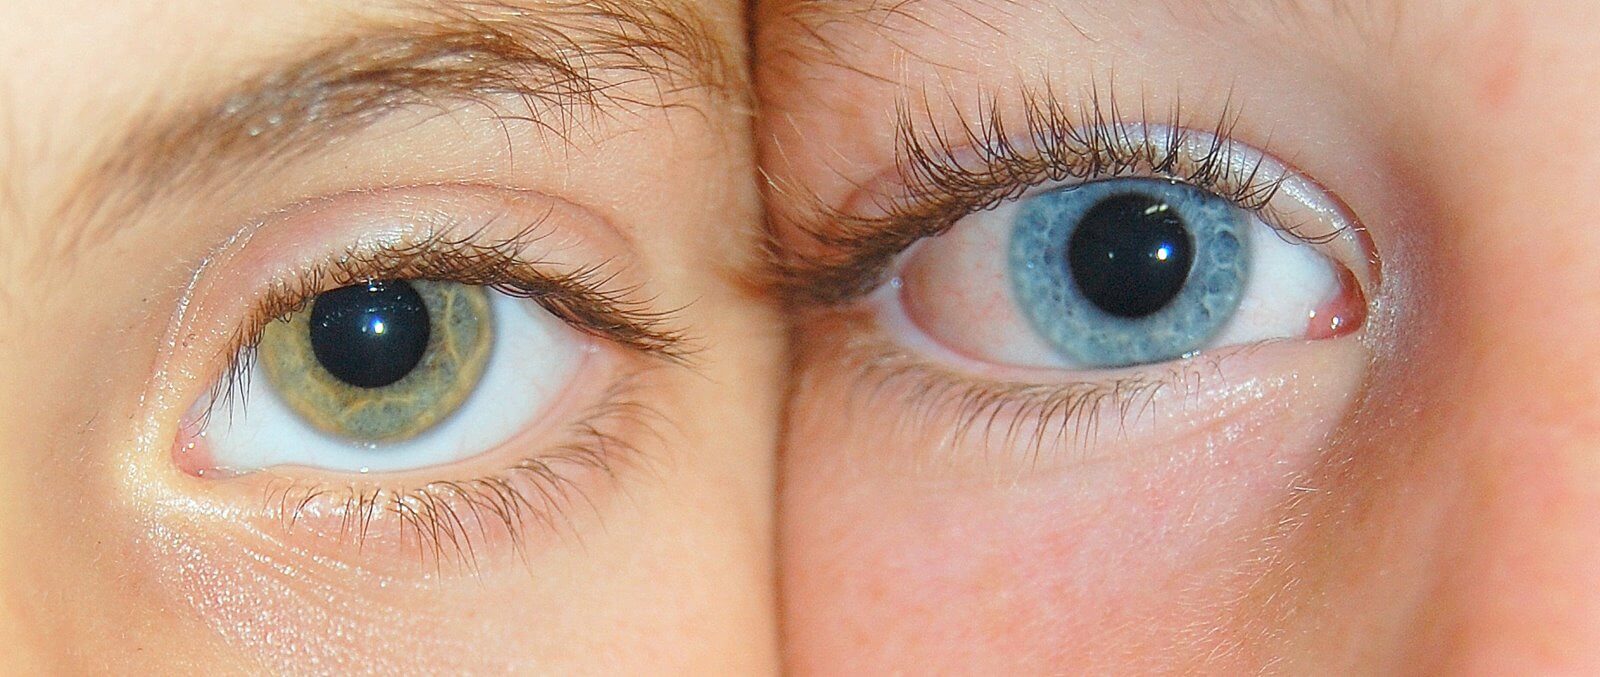 עין כחולה ועין ירוקה. ההבדלים בין המצולמות אינו רק בגוון אלא גם בגנום. מתוך ויקיפדיה